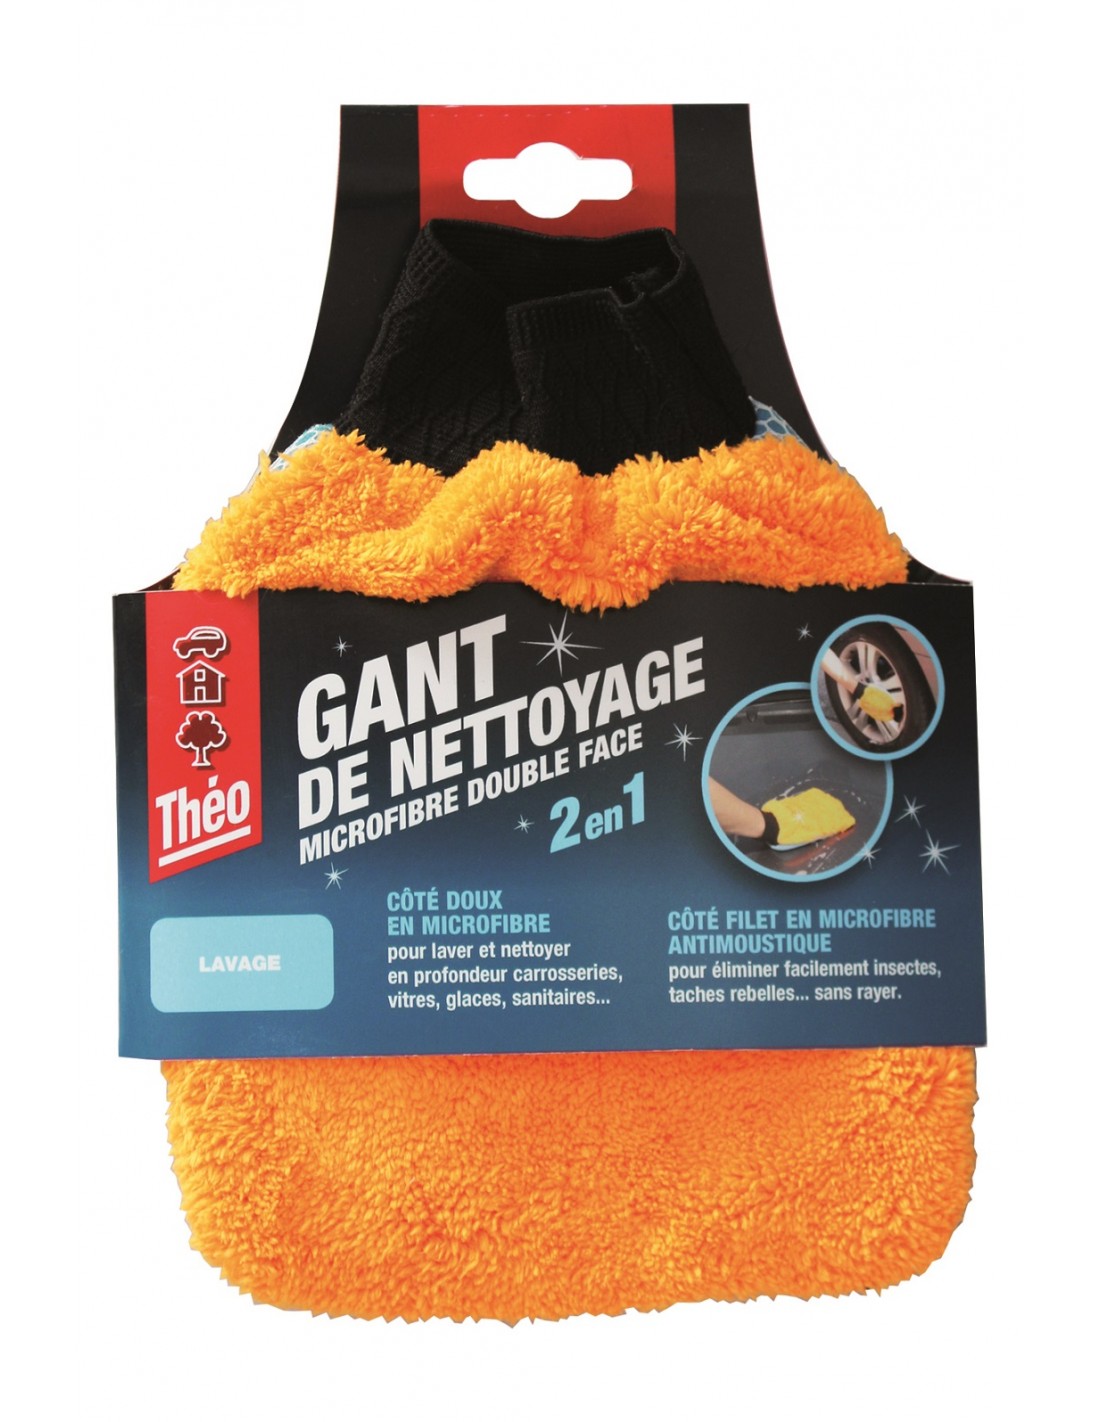 Gant De Nettoyage Microfibre Double Face